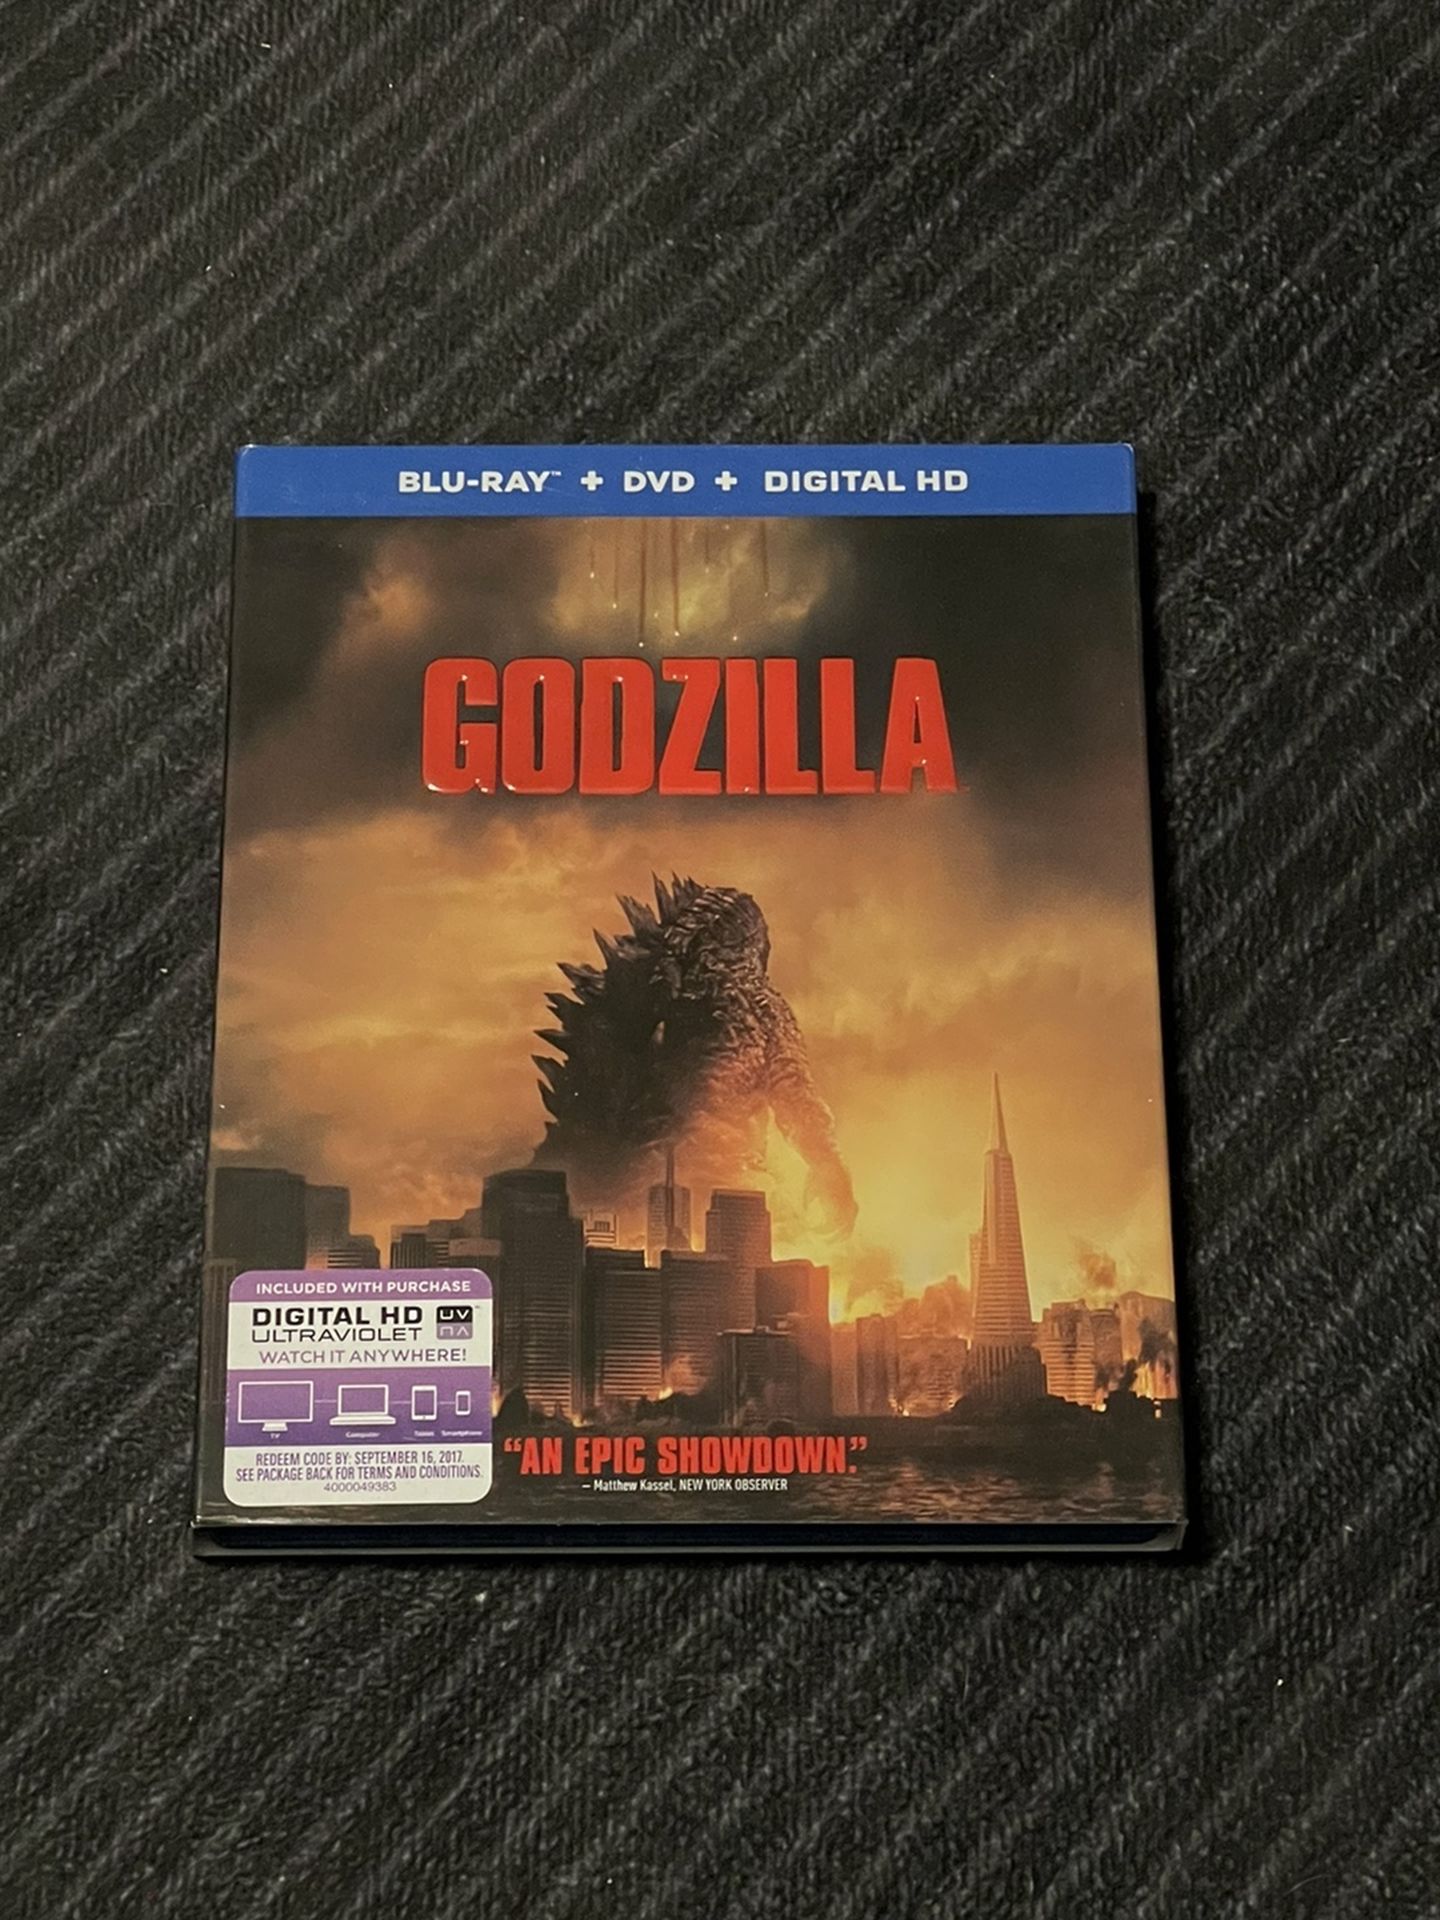 Godzilla 2014 Blu-ray